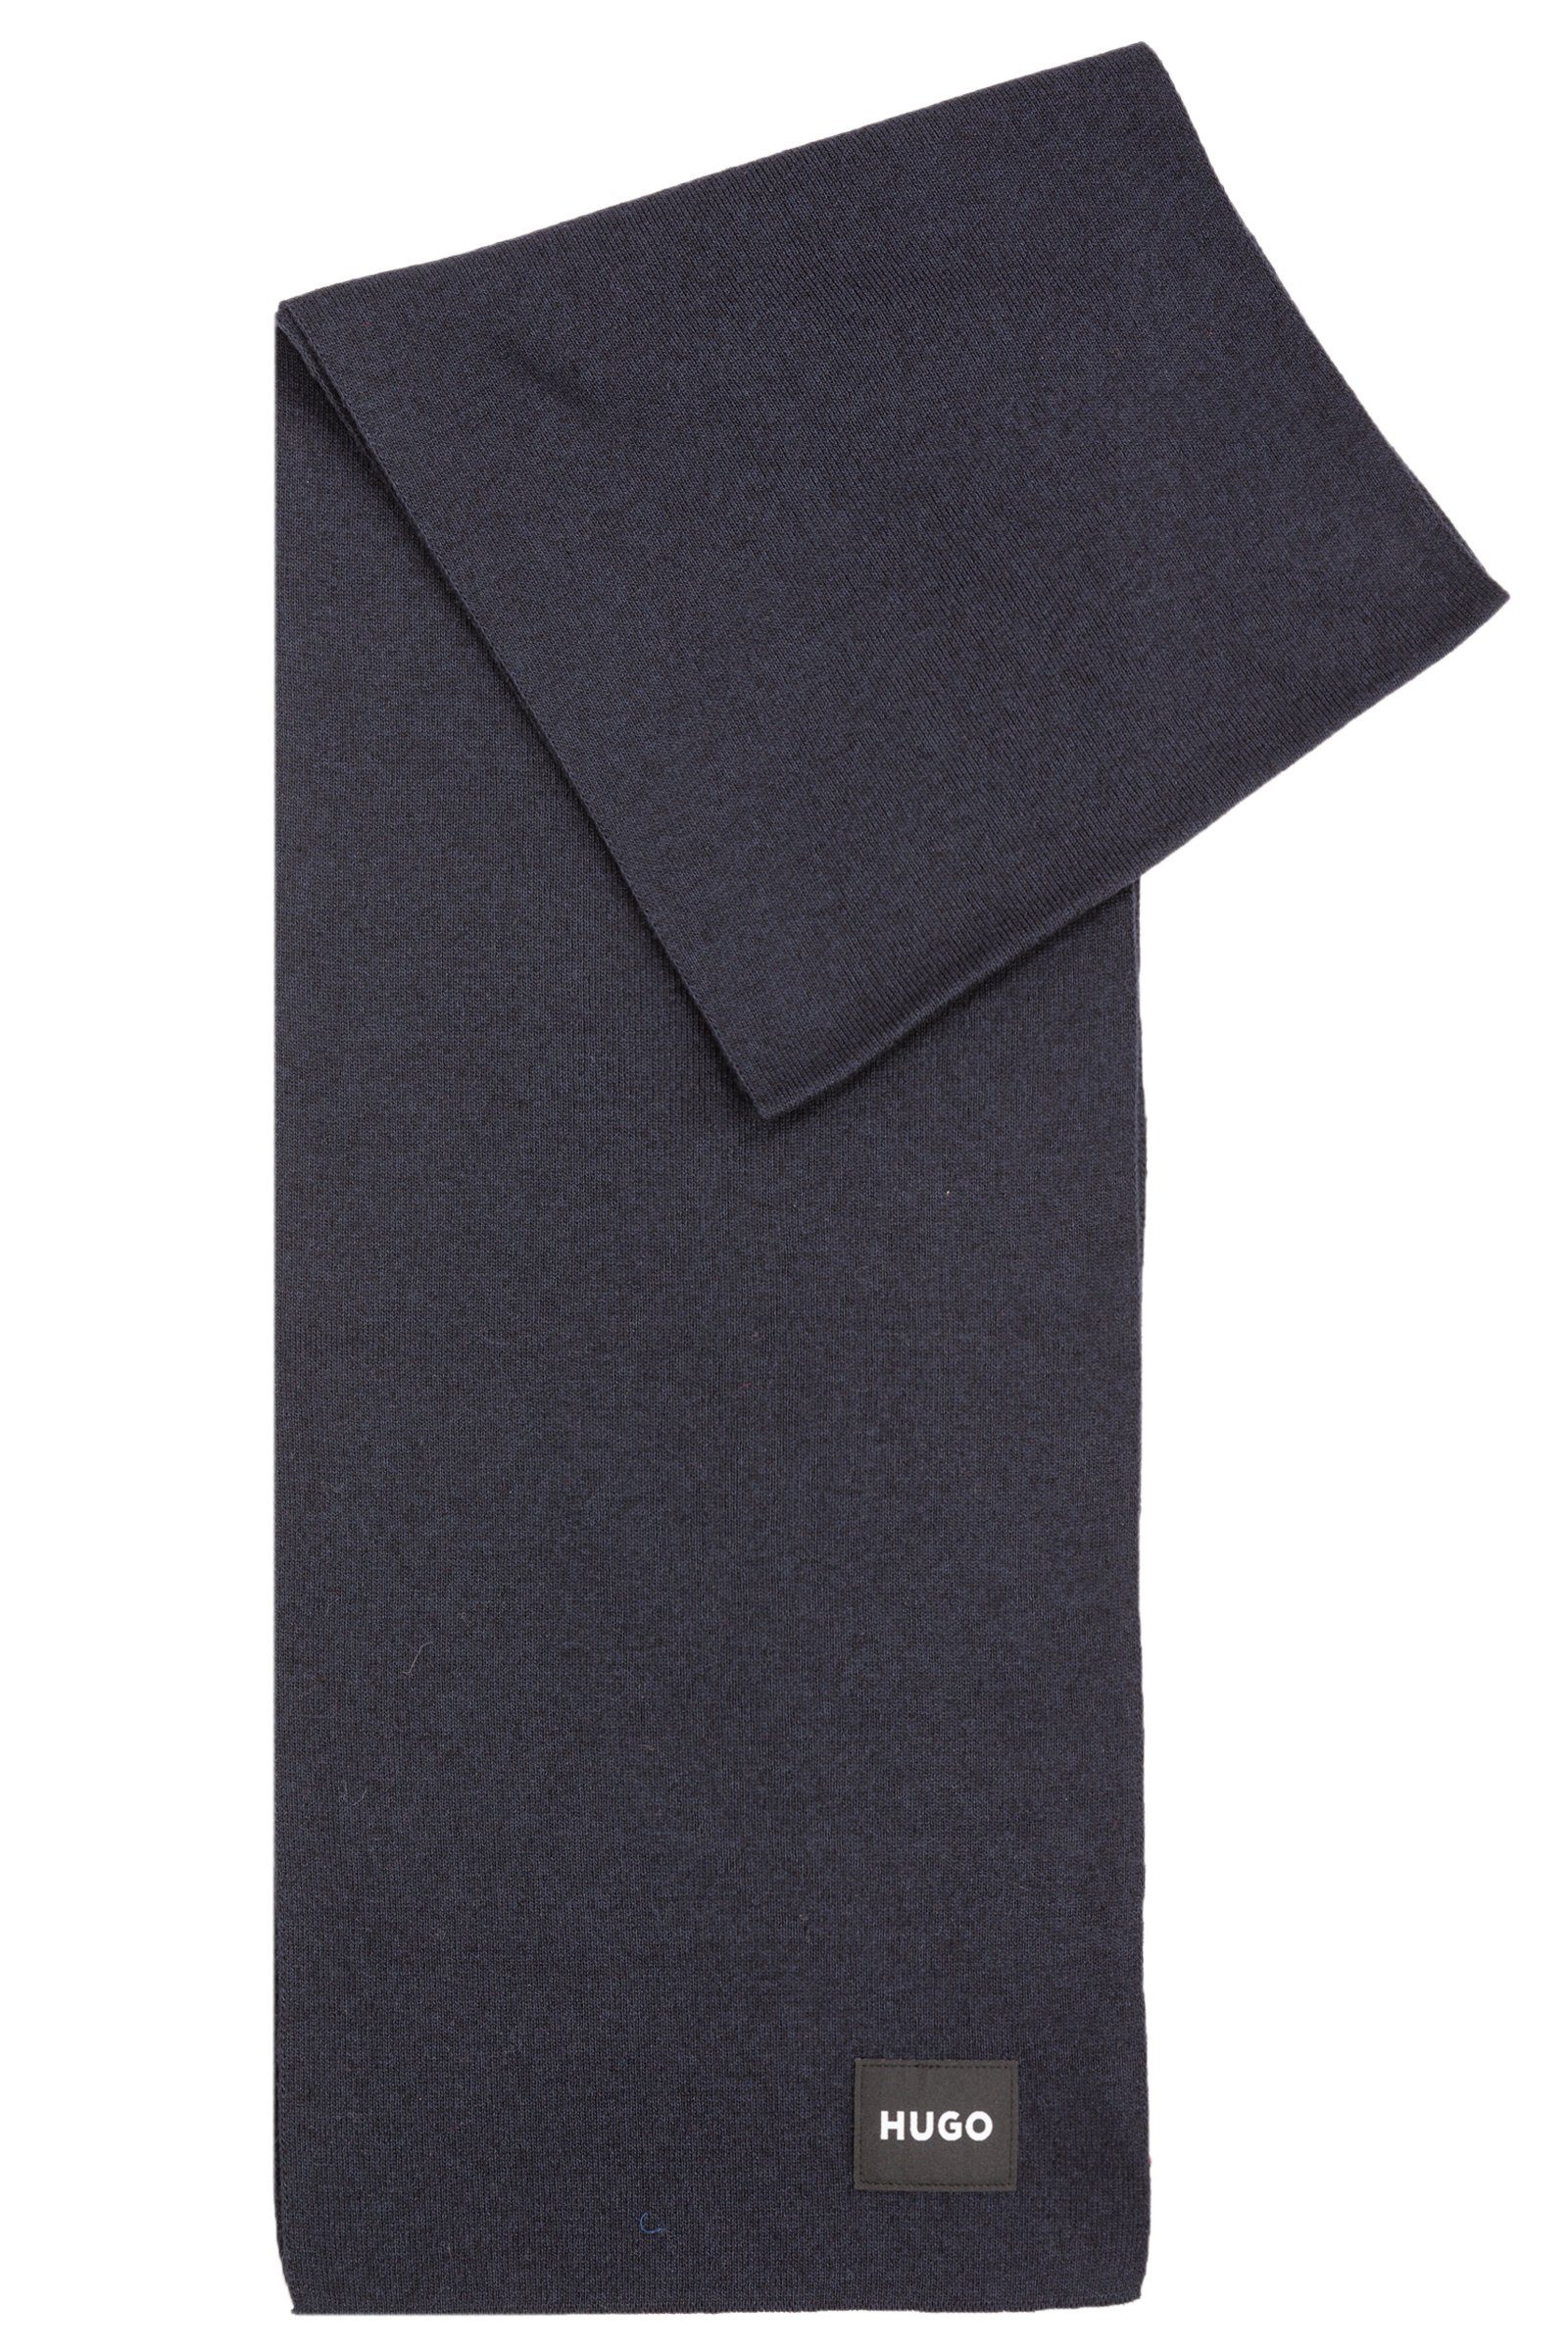 HUGO Schal Zevon, (keine Angabe, keine Angabe) Blau (410) | Modeschals